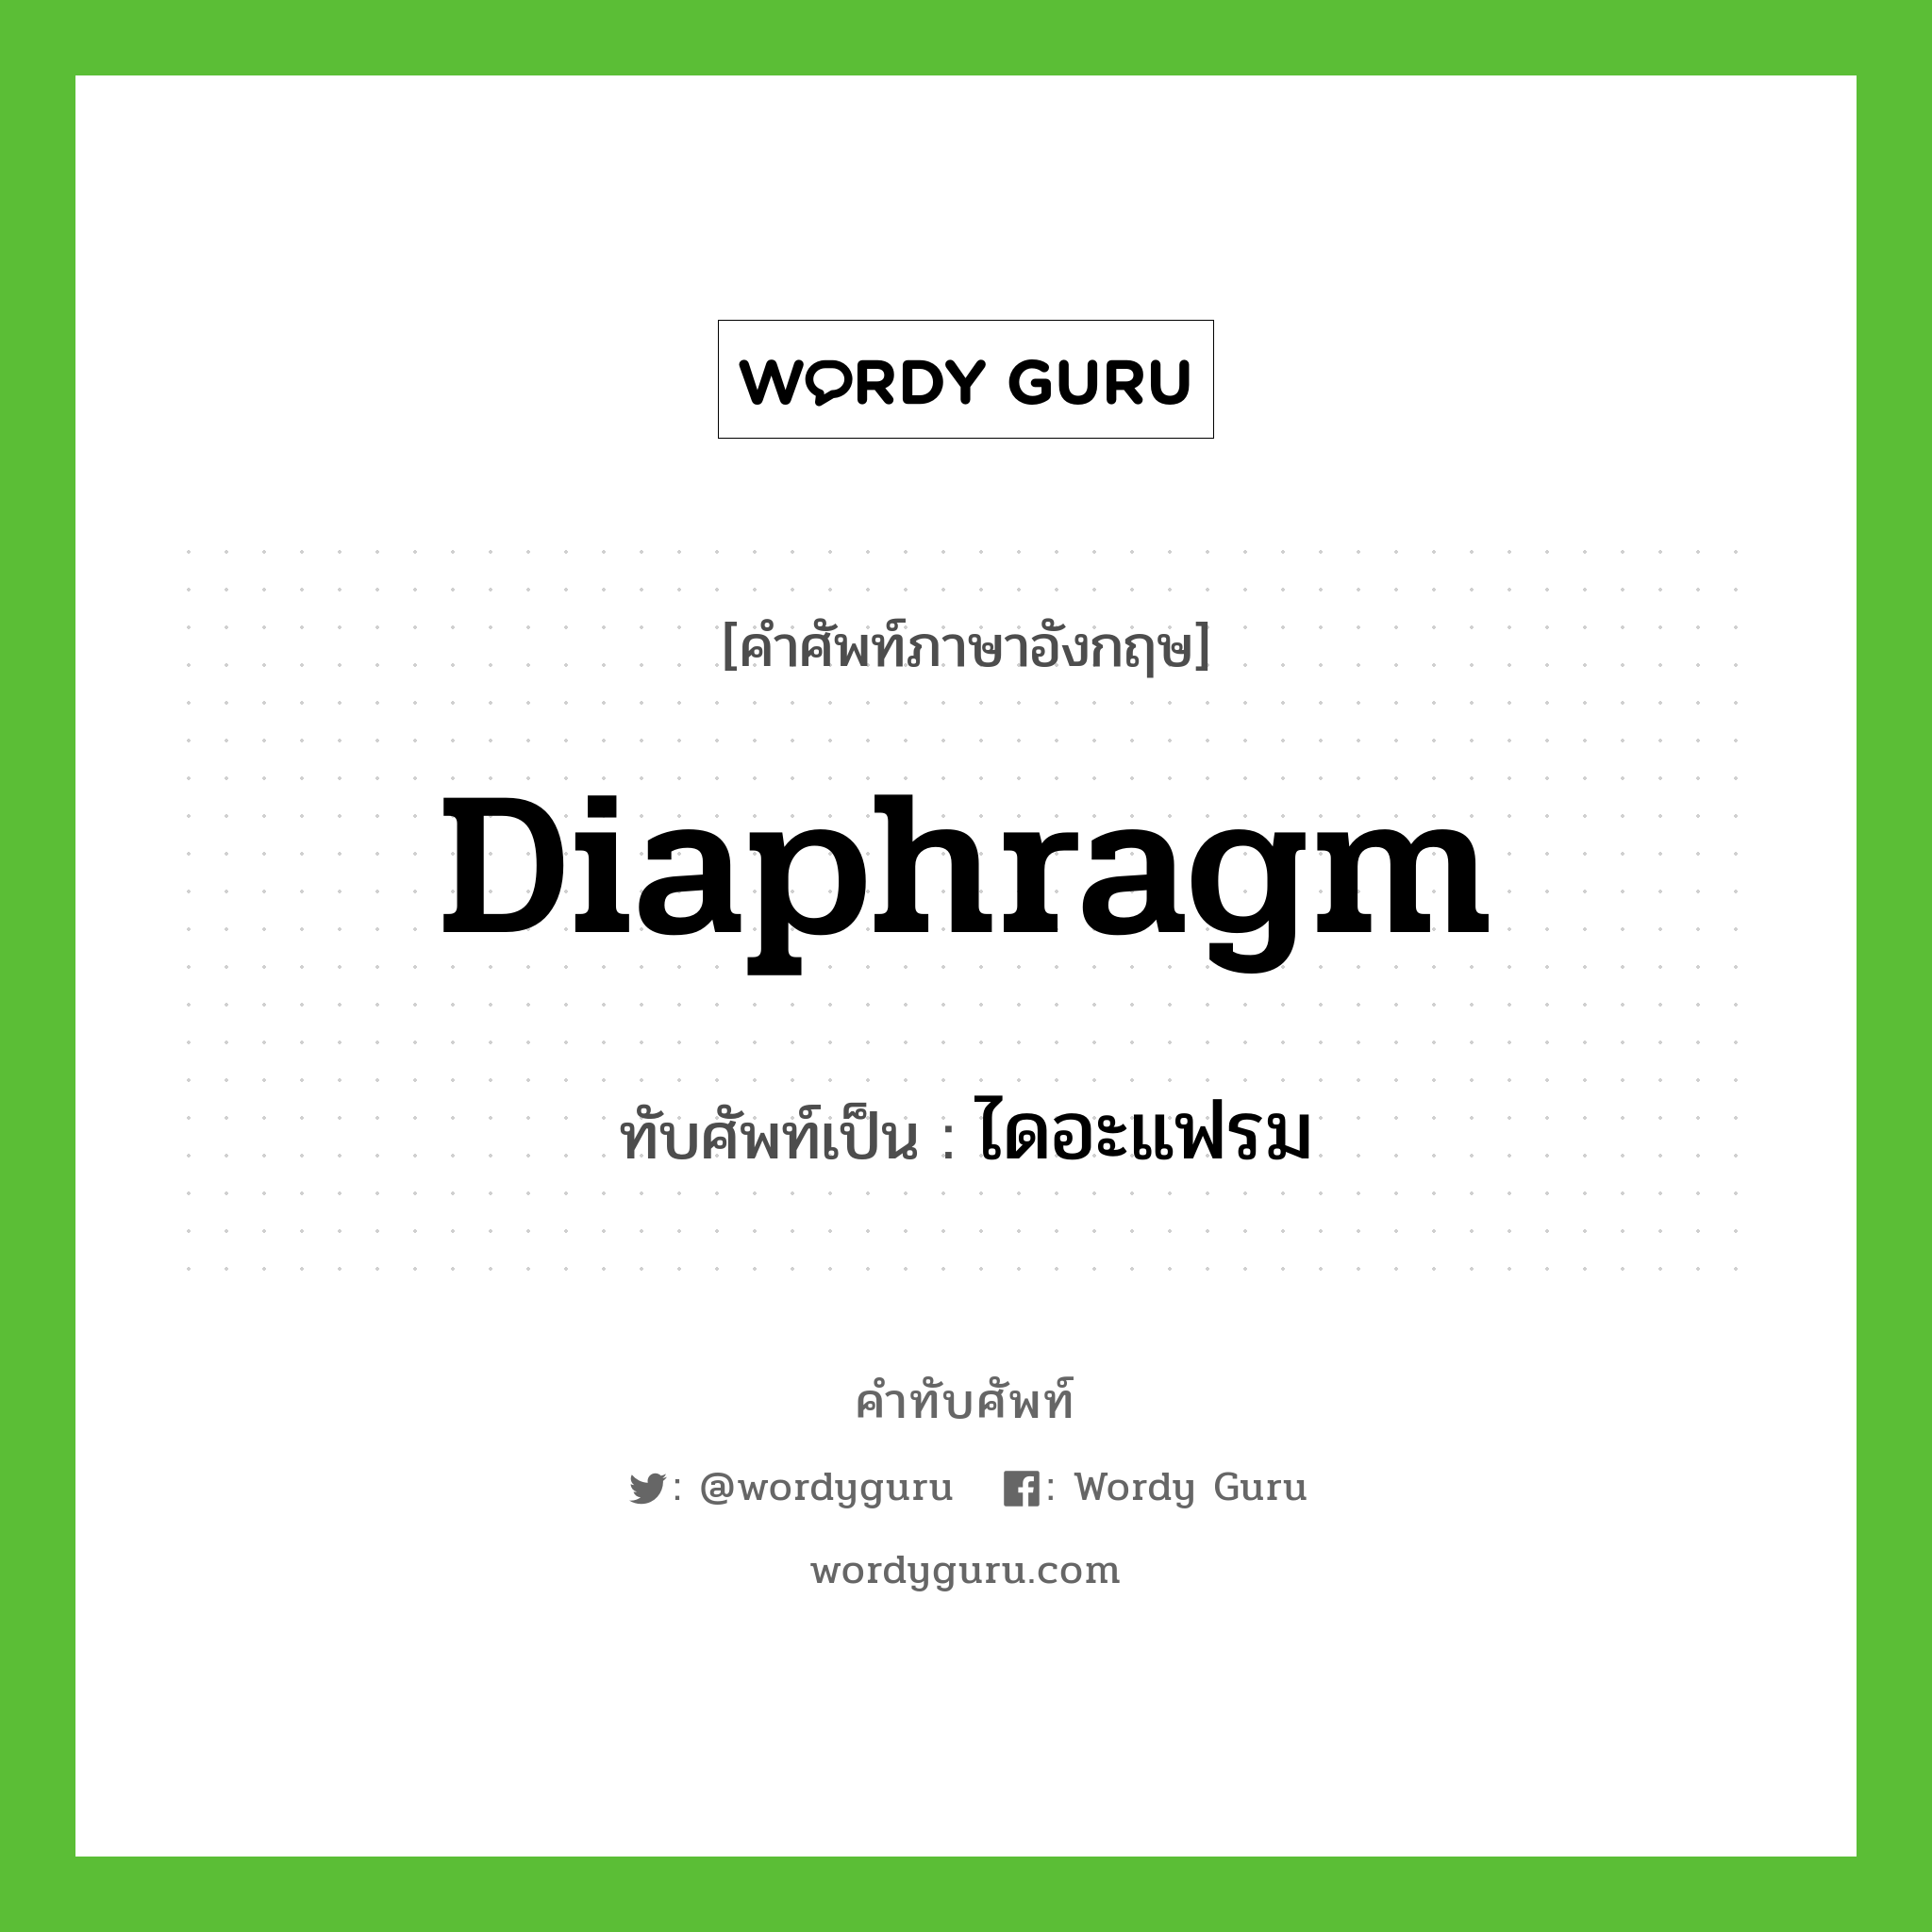 diaphragm เขียนเป็นคำไทยว่าอะไร?, คำศัพท์ภาษาอังกฤษ diaphragm ทับศัพท์เป็น ไดอะแฟรม